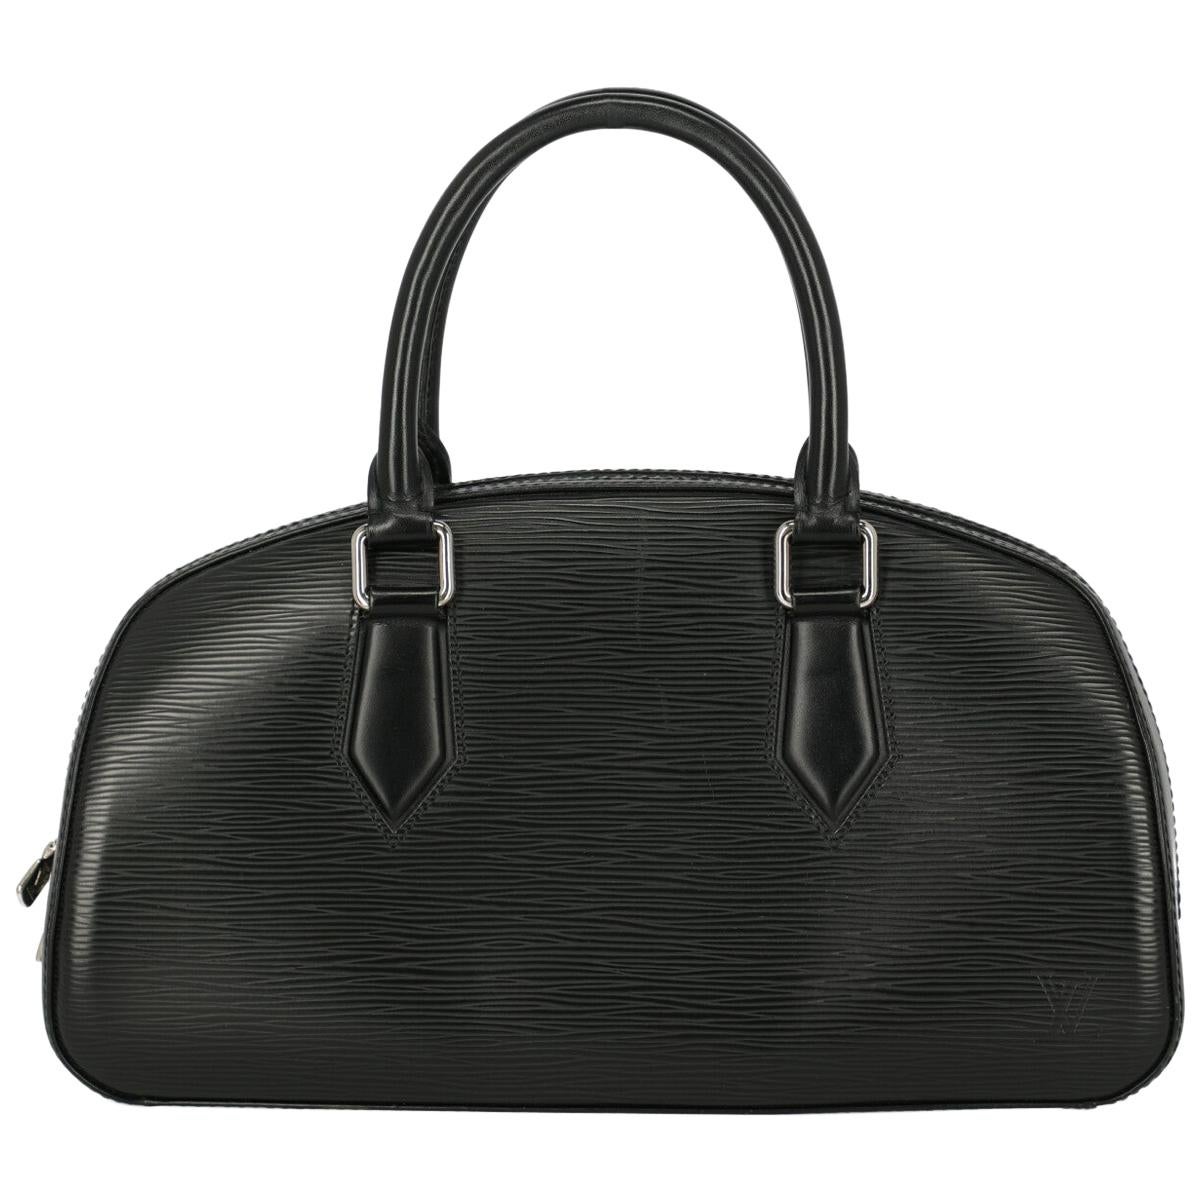 Louis Vuitton Women's Handbag Black Leather For Sale